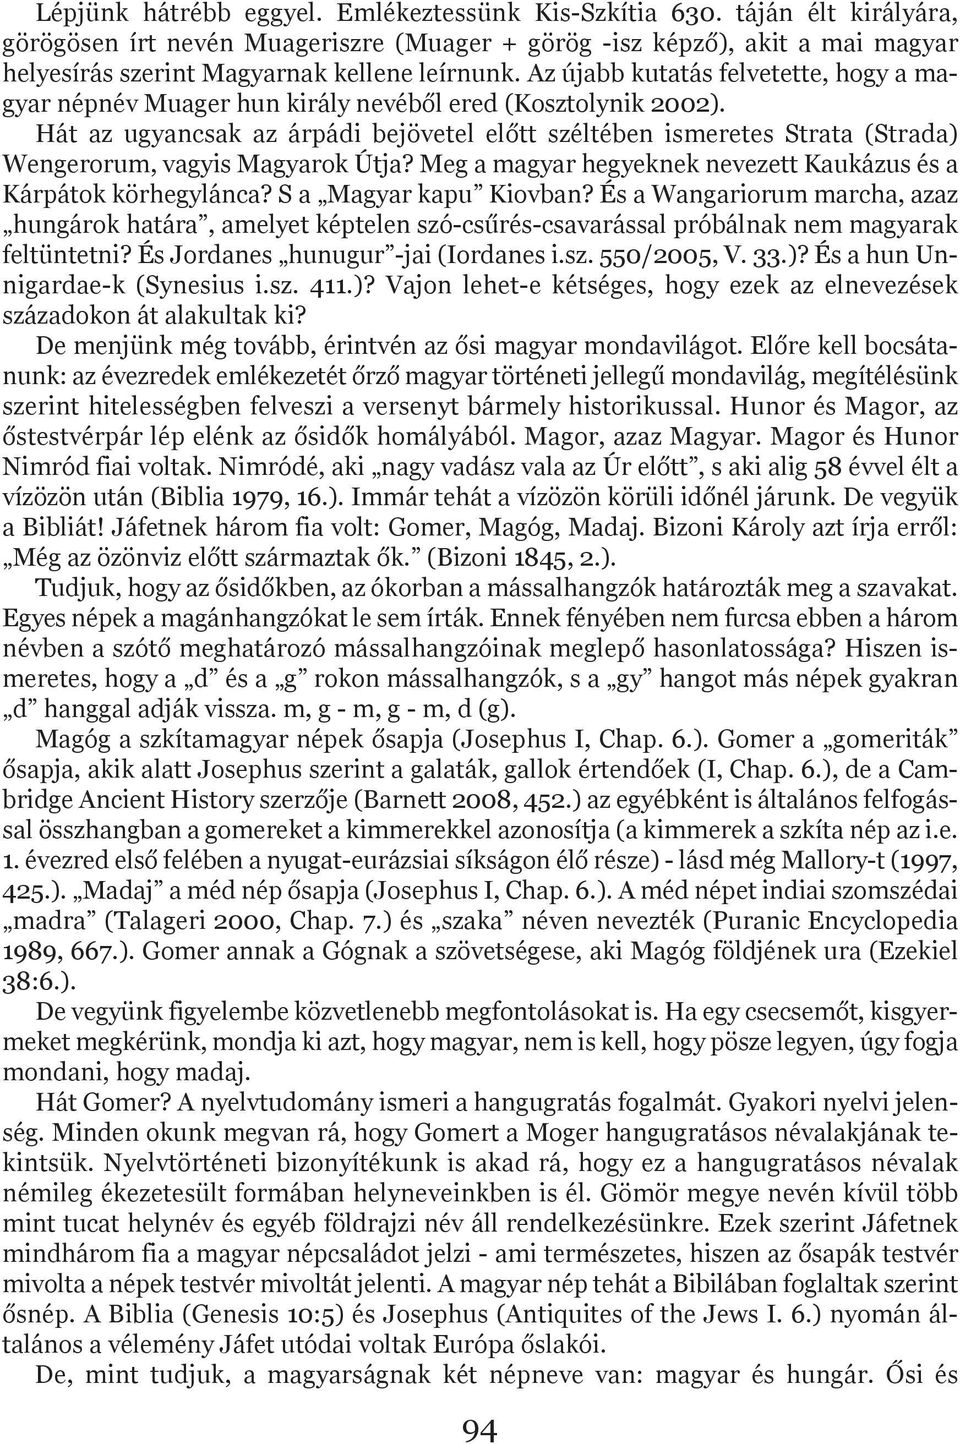 Az újabb kutatás felvetette, hogy a ma - gyar népnév Muager hun király nevéből ered (Kosztolynik 2002).